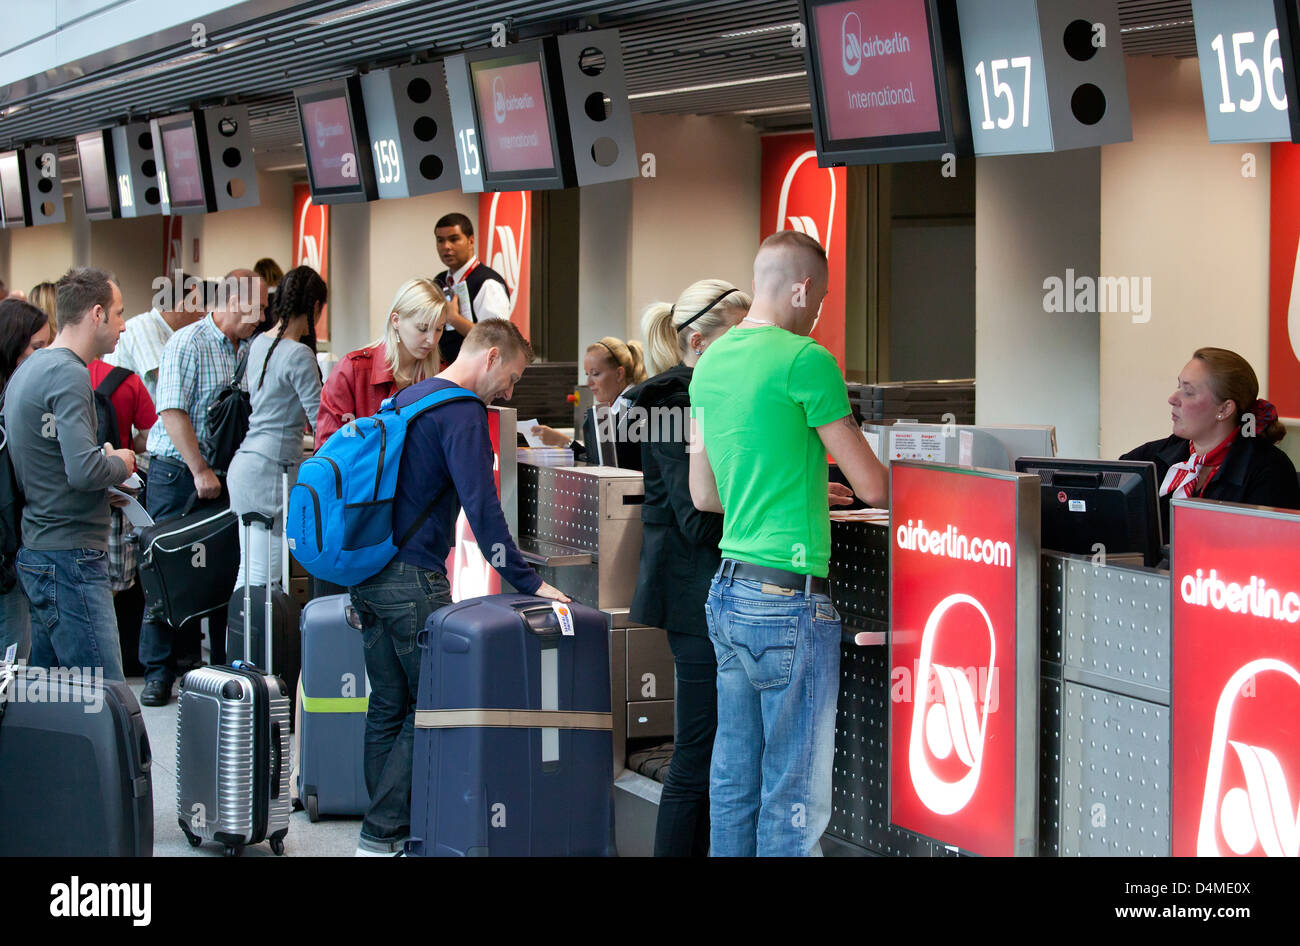 Düsseldorf, Airberlin Passagiere beim Check-in Schalter am Flughafen  Düsseldorf International Stockfotografie - Alamy